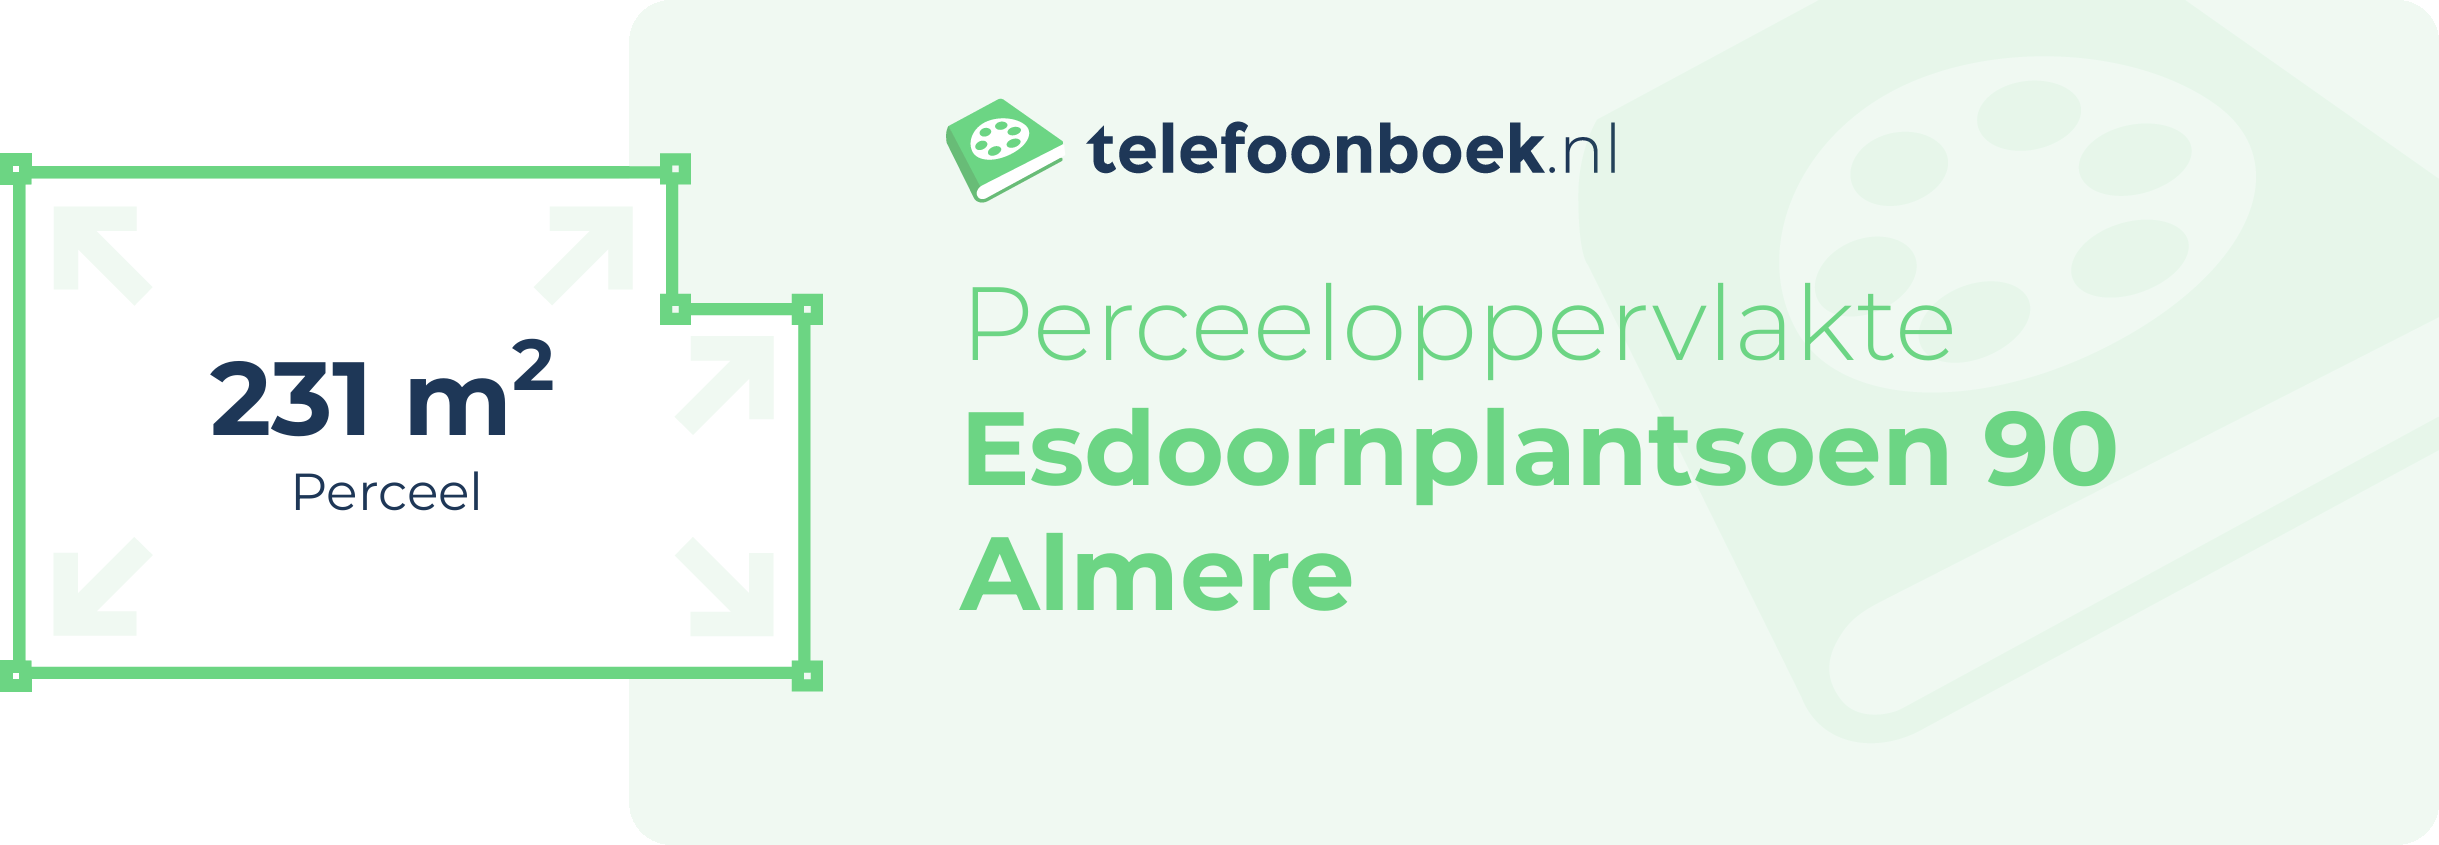 Perceeloppervlakte Esdoornplantsoen 90 Almere